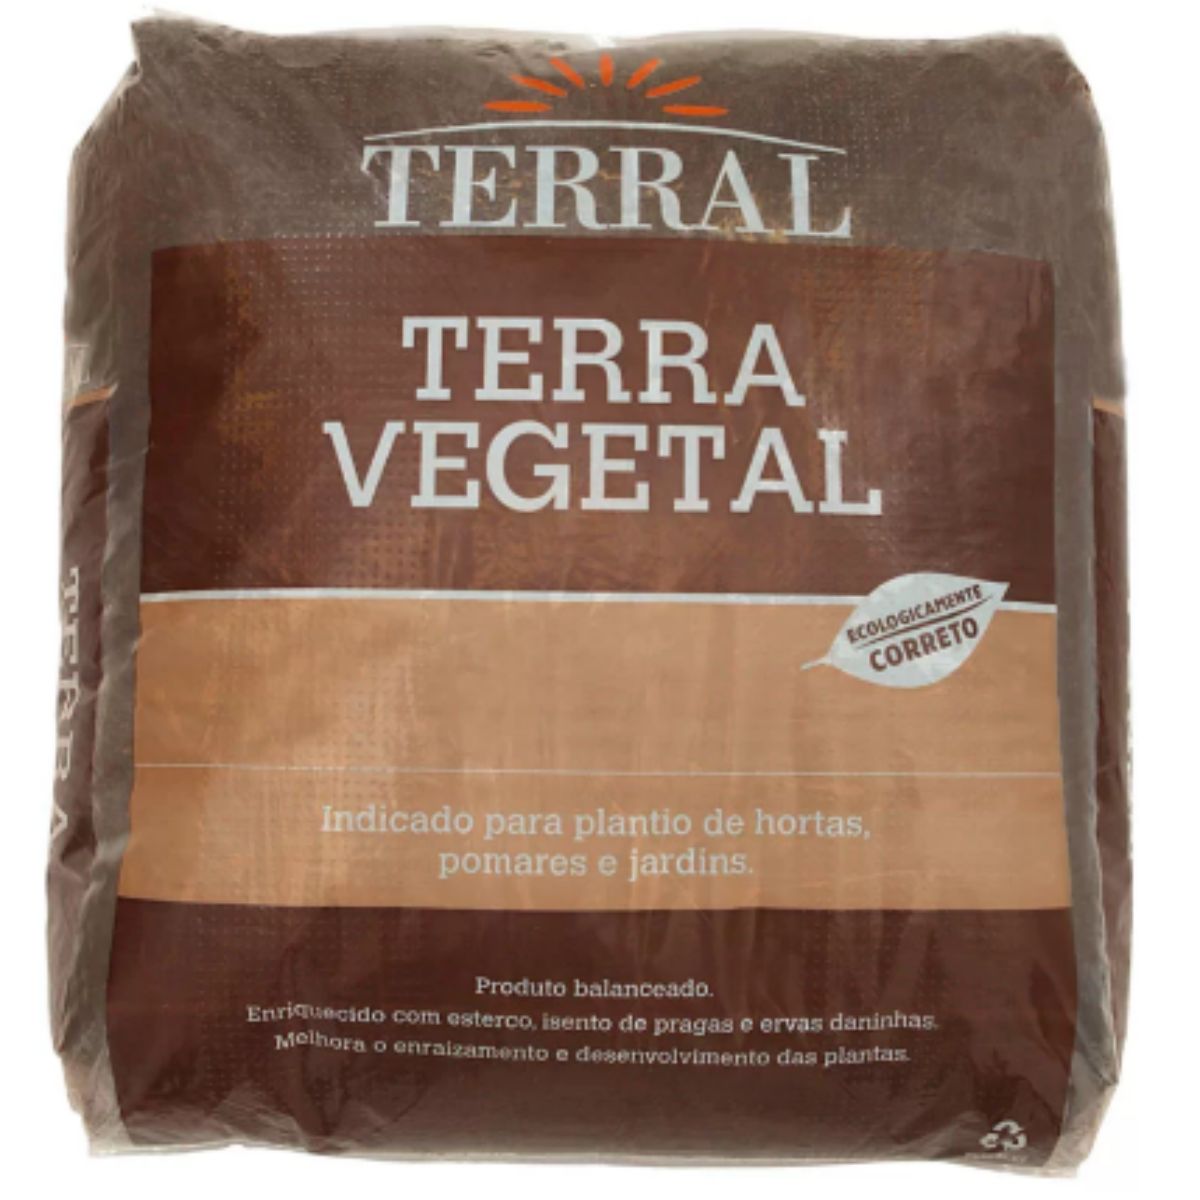 terra-vegetal-terral-25kg-1.jpg